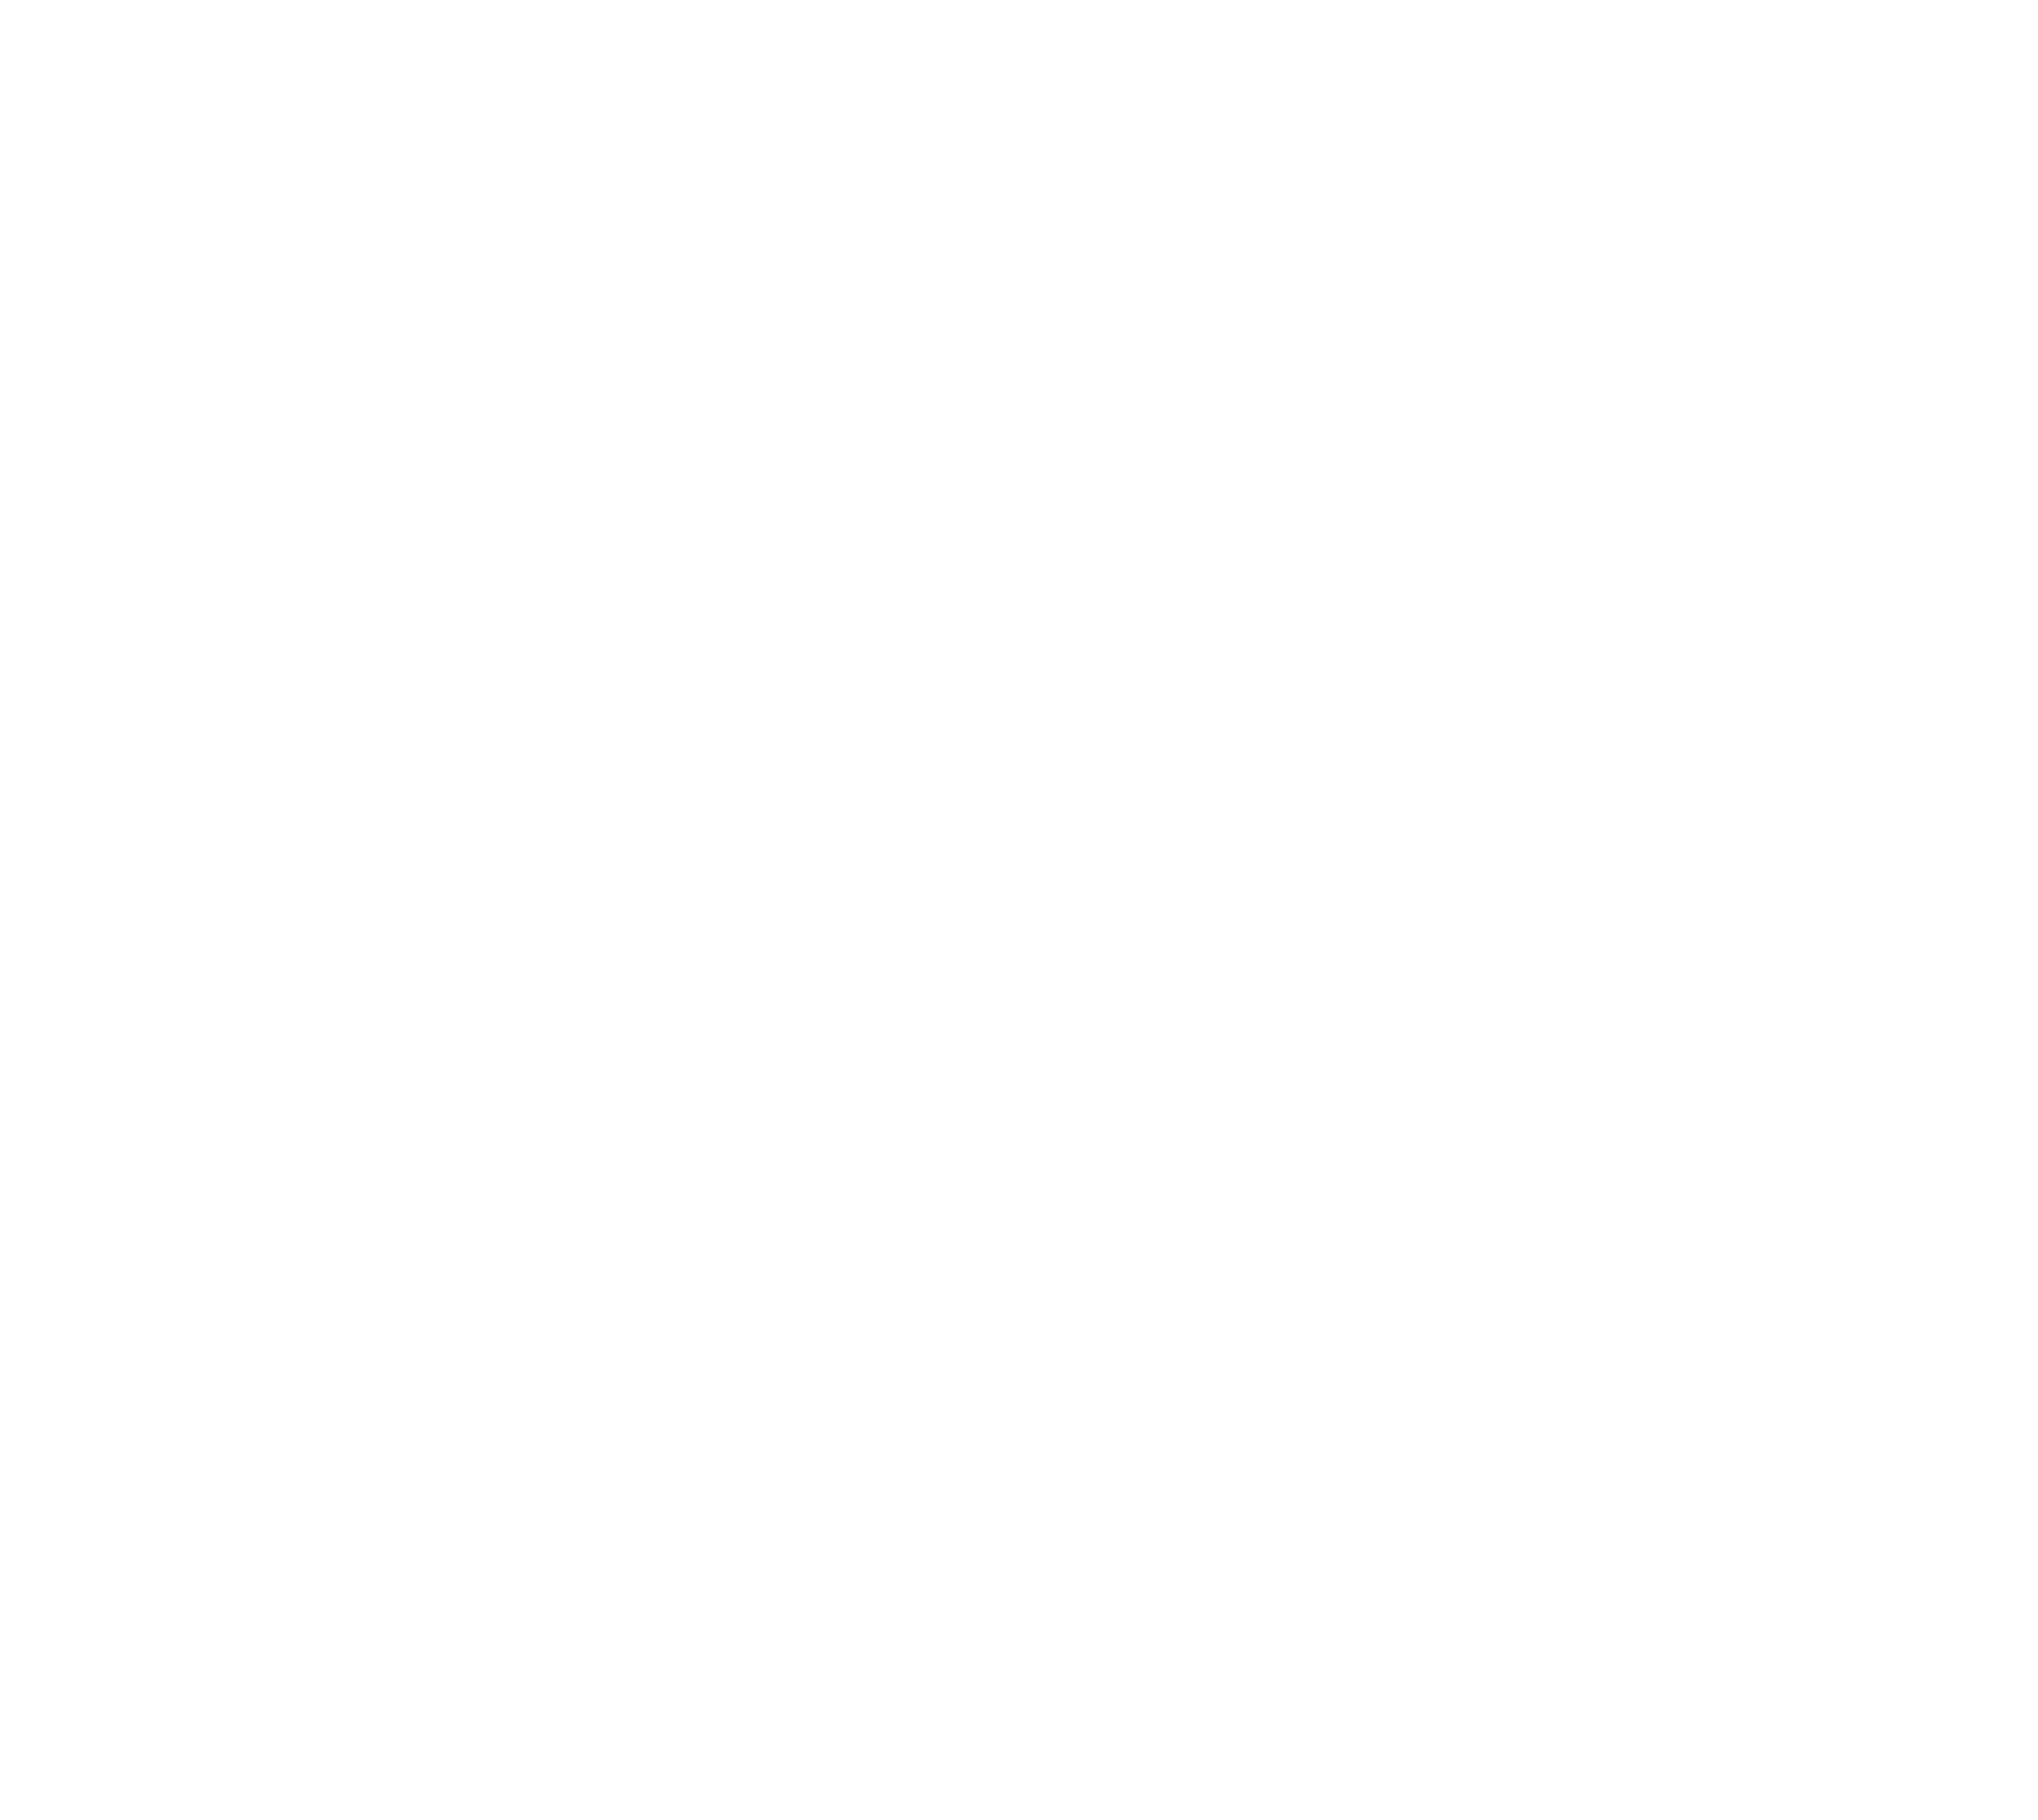 t shirt maker logo